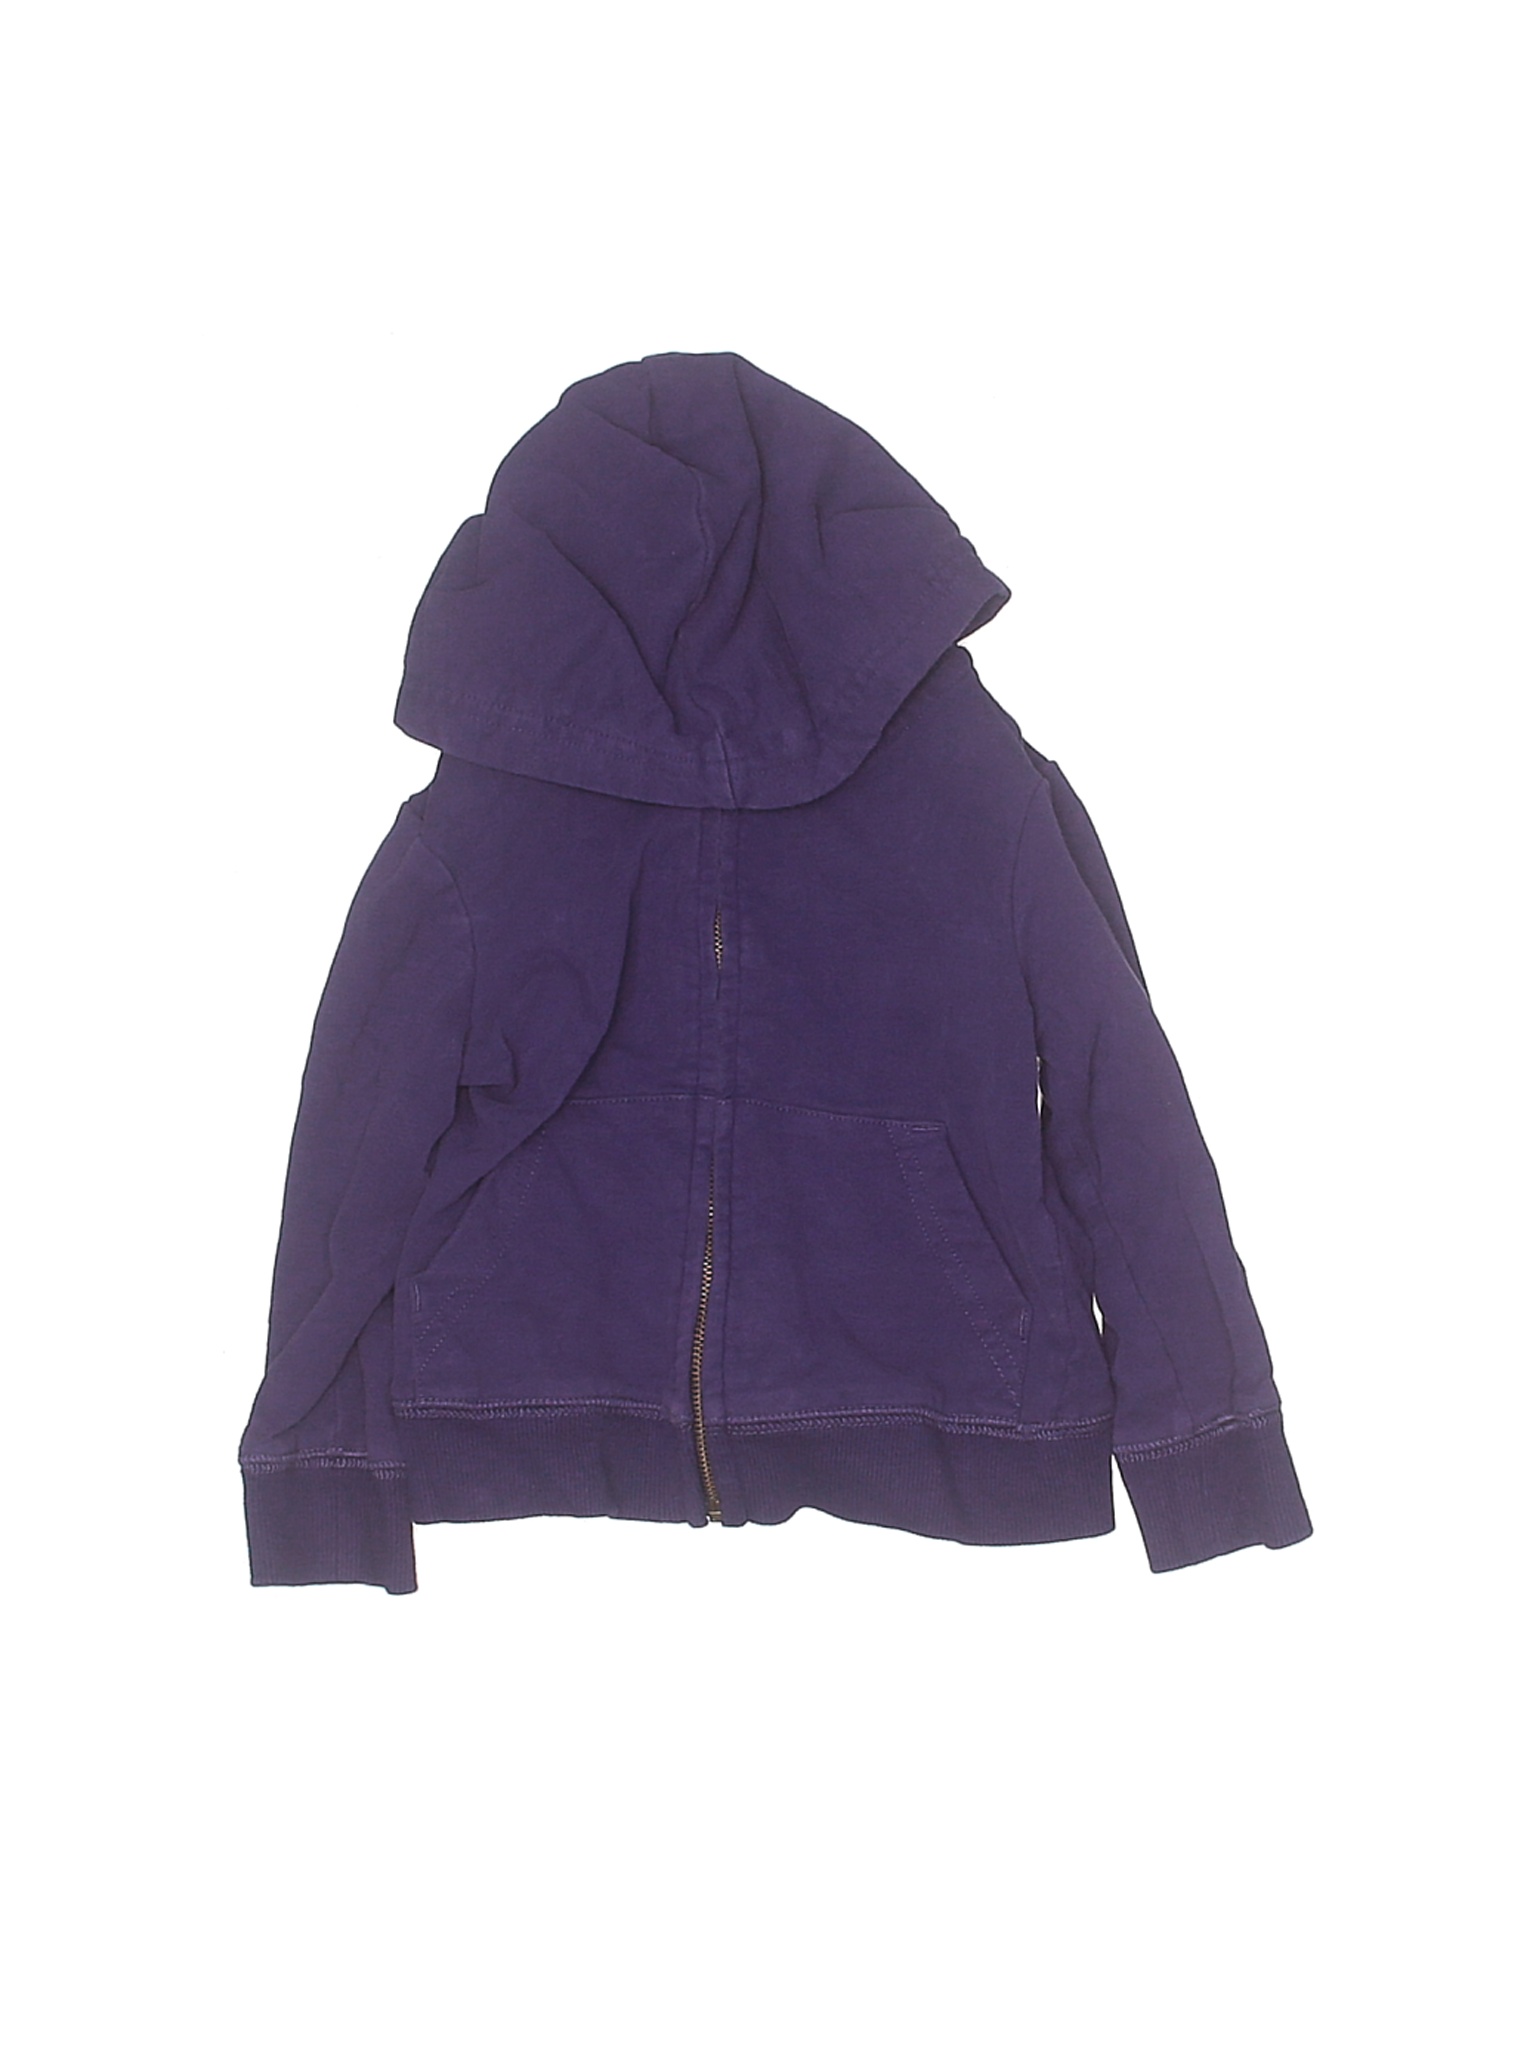 Primary Clothing Boys Purple Zip Up Hoodie 12-18 Months | eBay